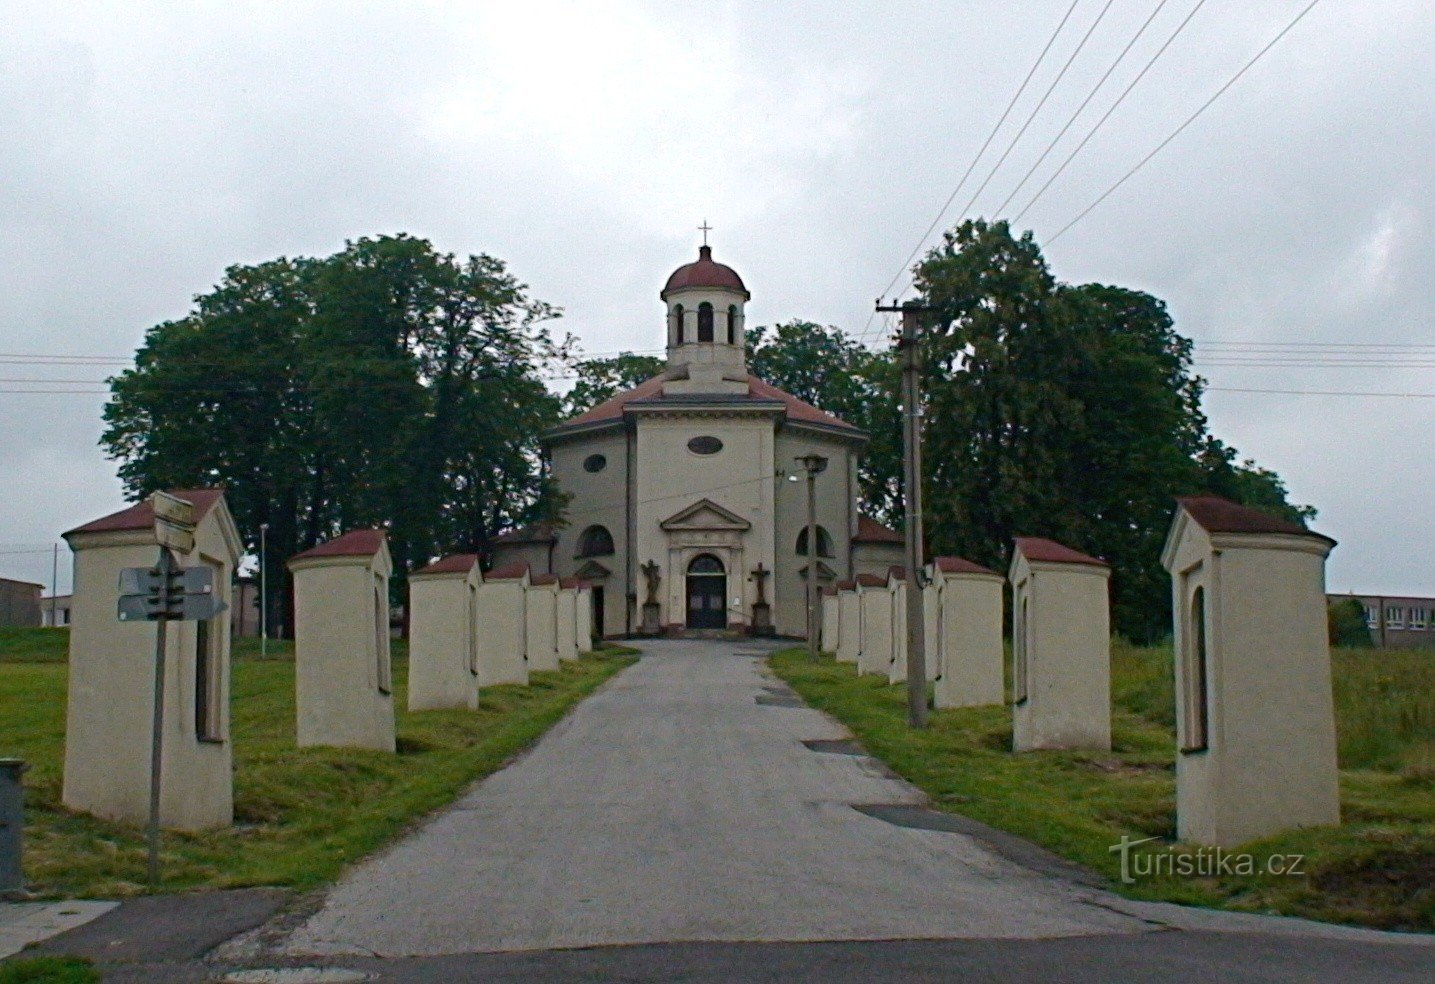 Nhà thờ Petřvald của St. Henry với nhà nguyện